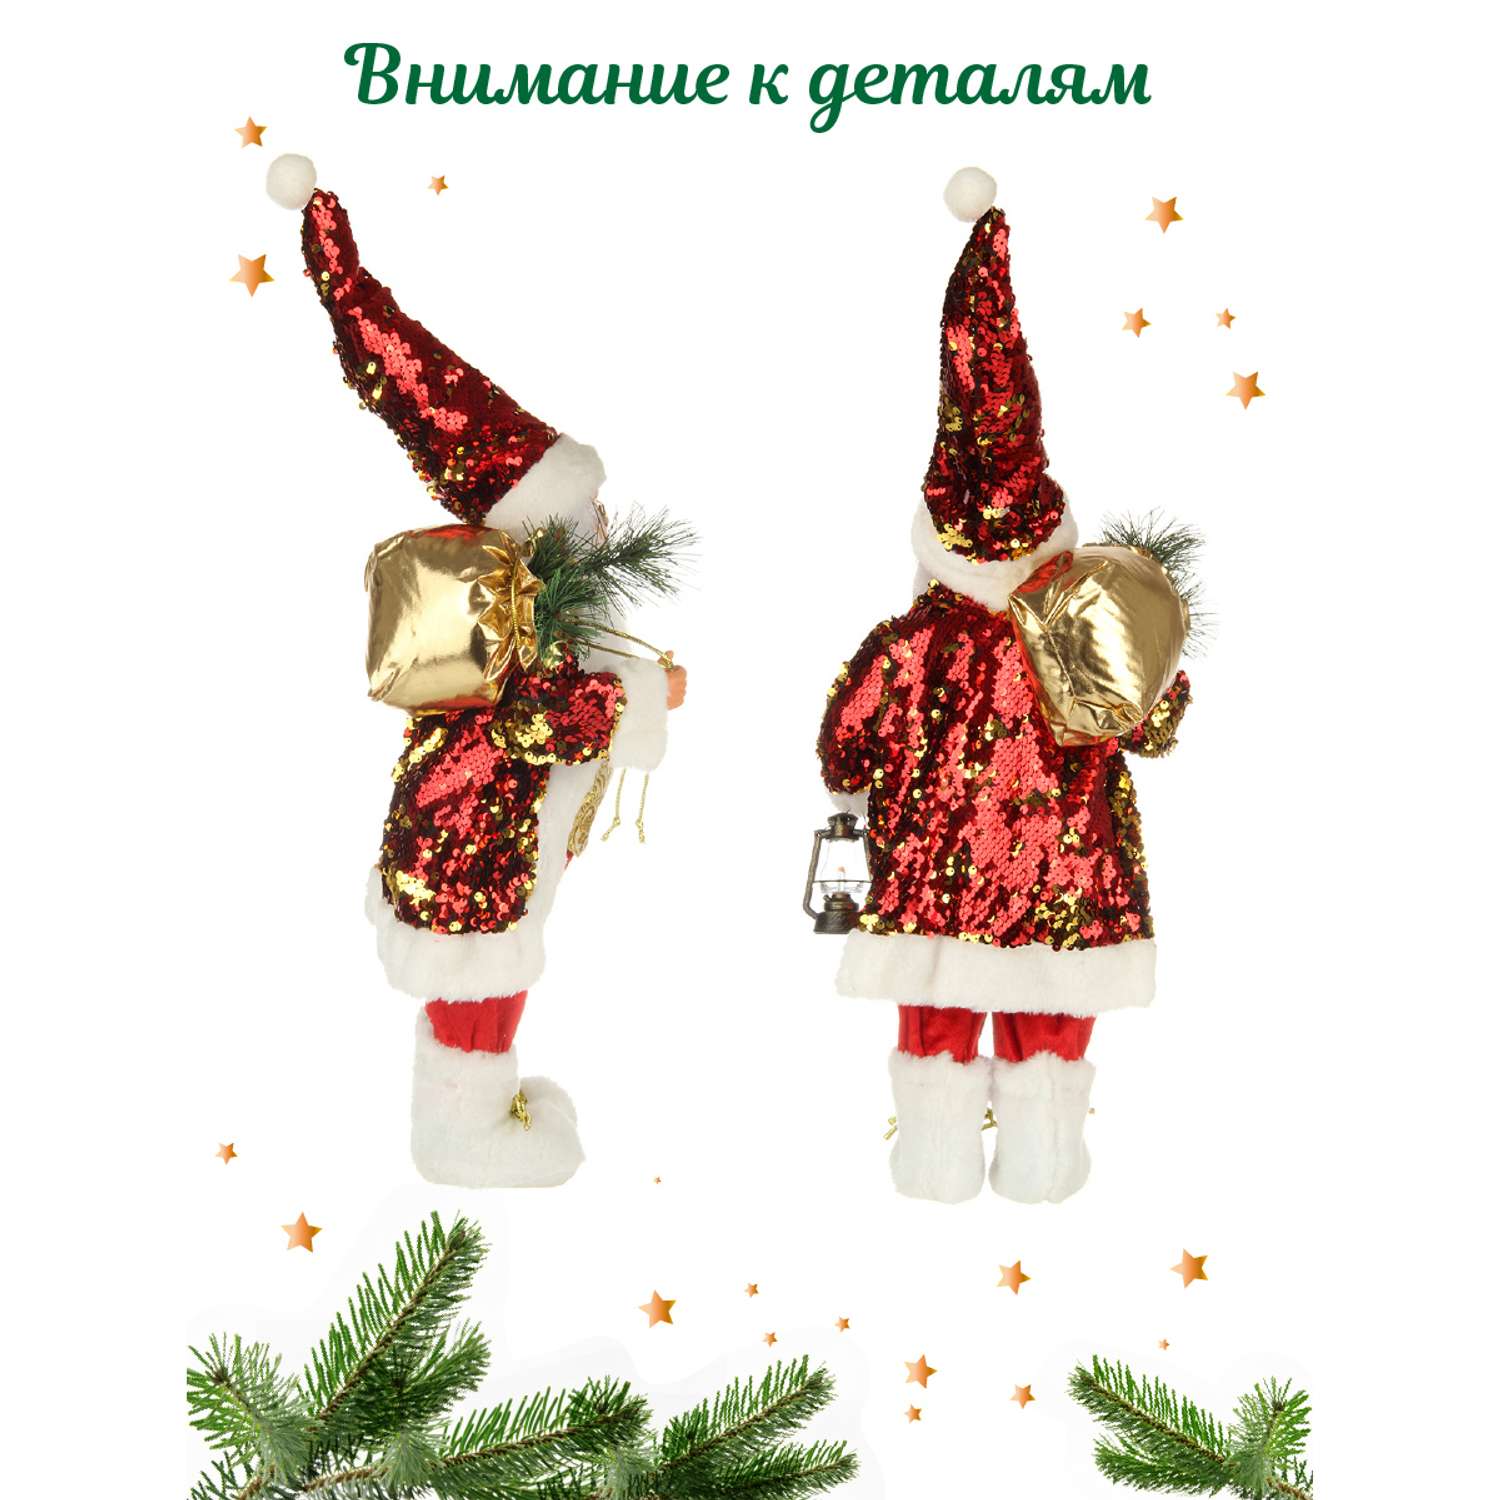 Дед Мороз Весёлый хоровод 45 см - фото 2